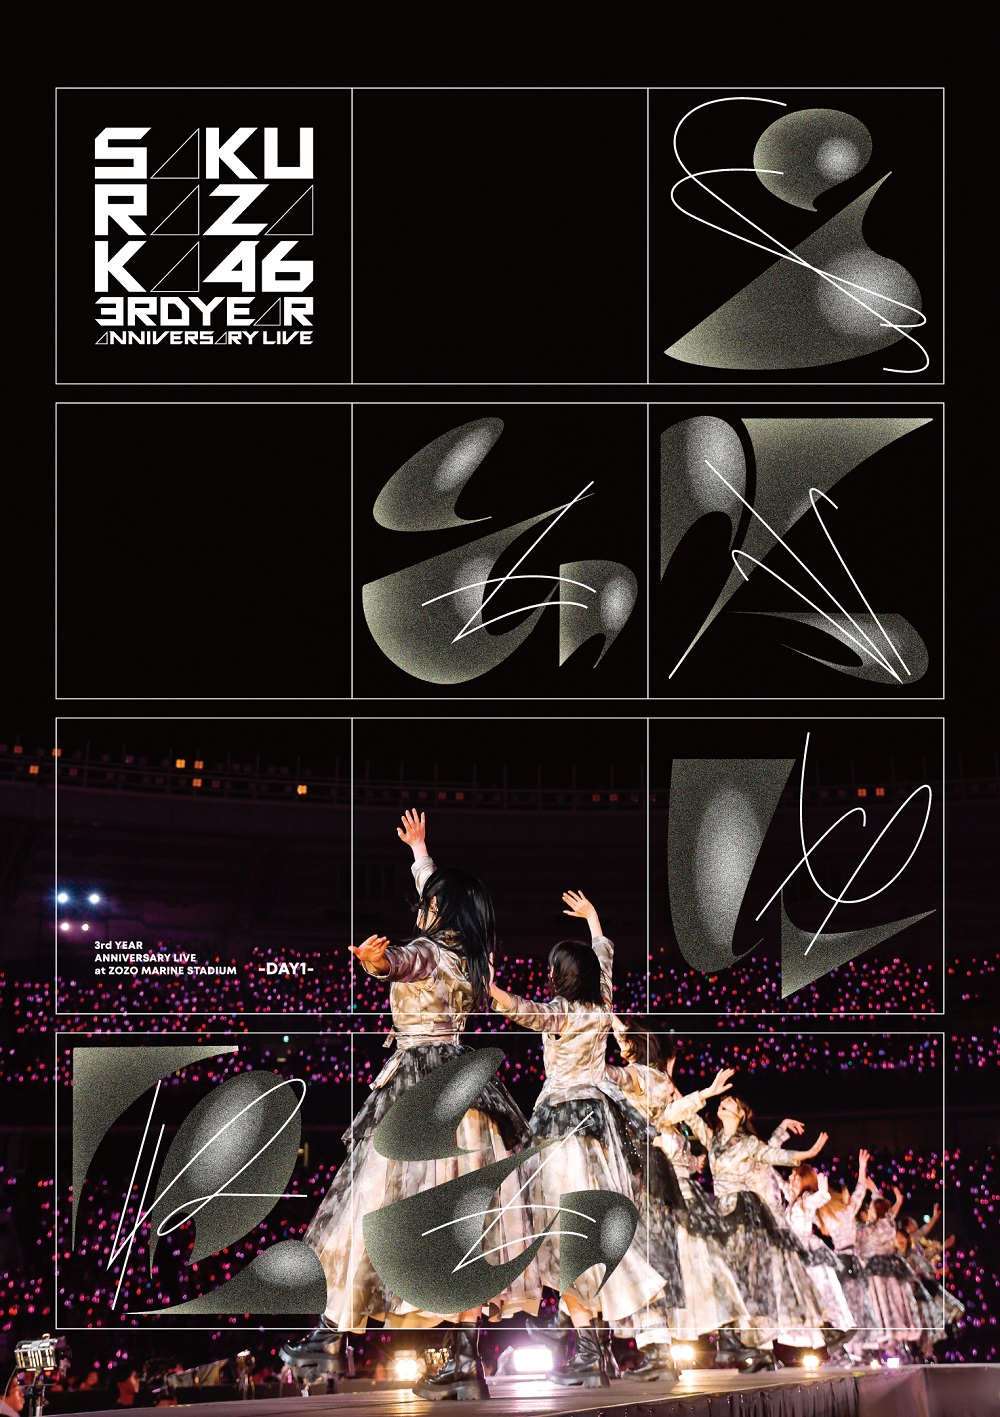 『3rd YEAR ANNIVERSARY LIVE at ZOZO MARINE STADIUM -DAY1-』初回仕様限定 通常盤DVDジャケット